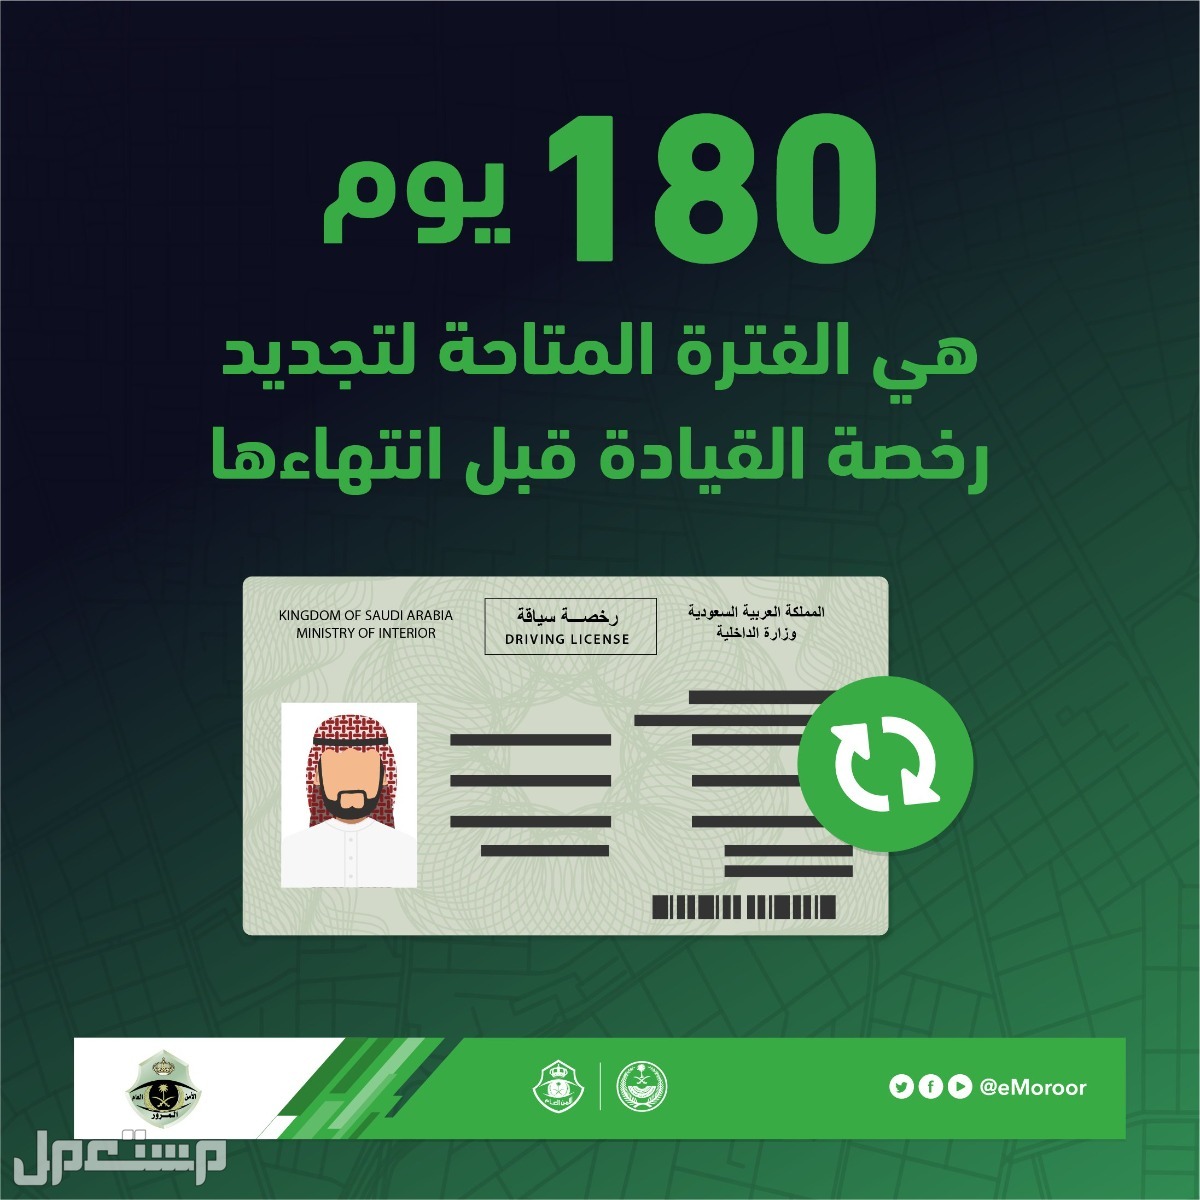 هل يمكن تجديد رخصة القيادة بدون فحص النظر؟ "المرور" يوضح في السعودية